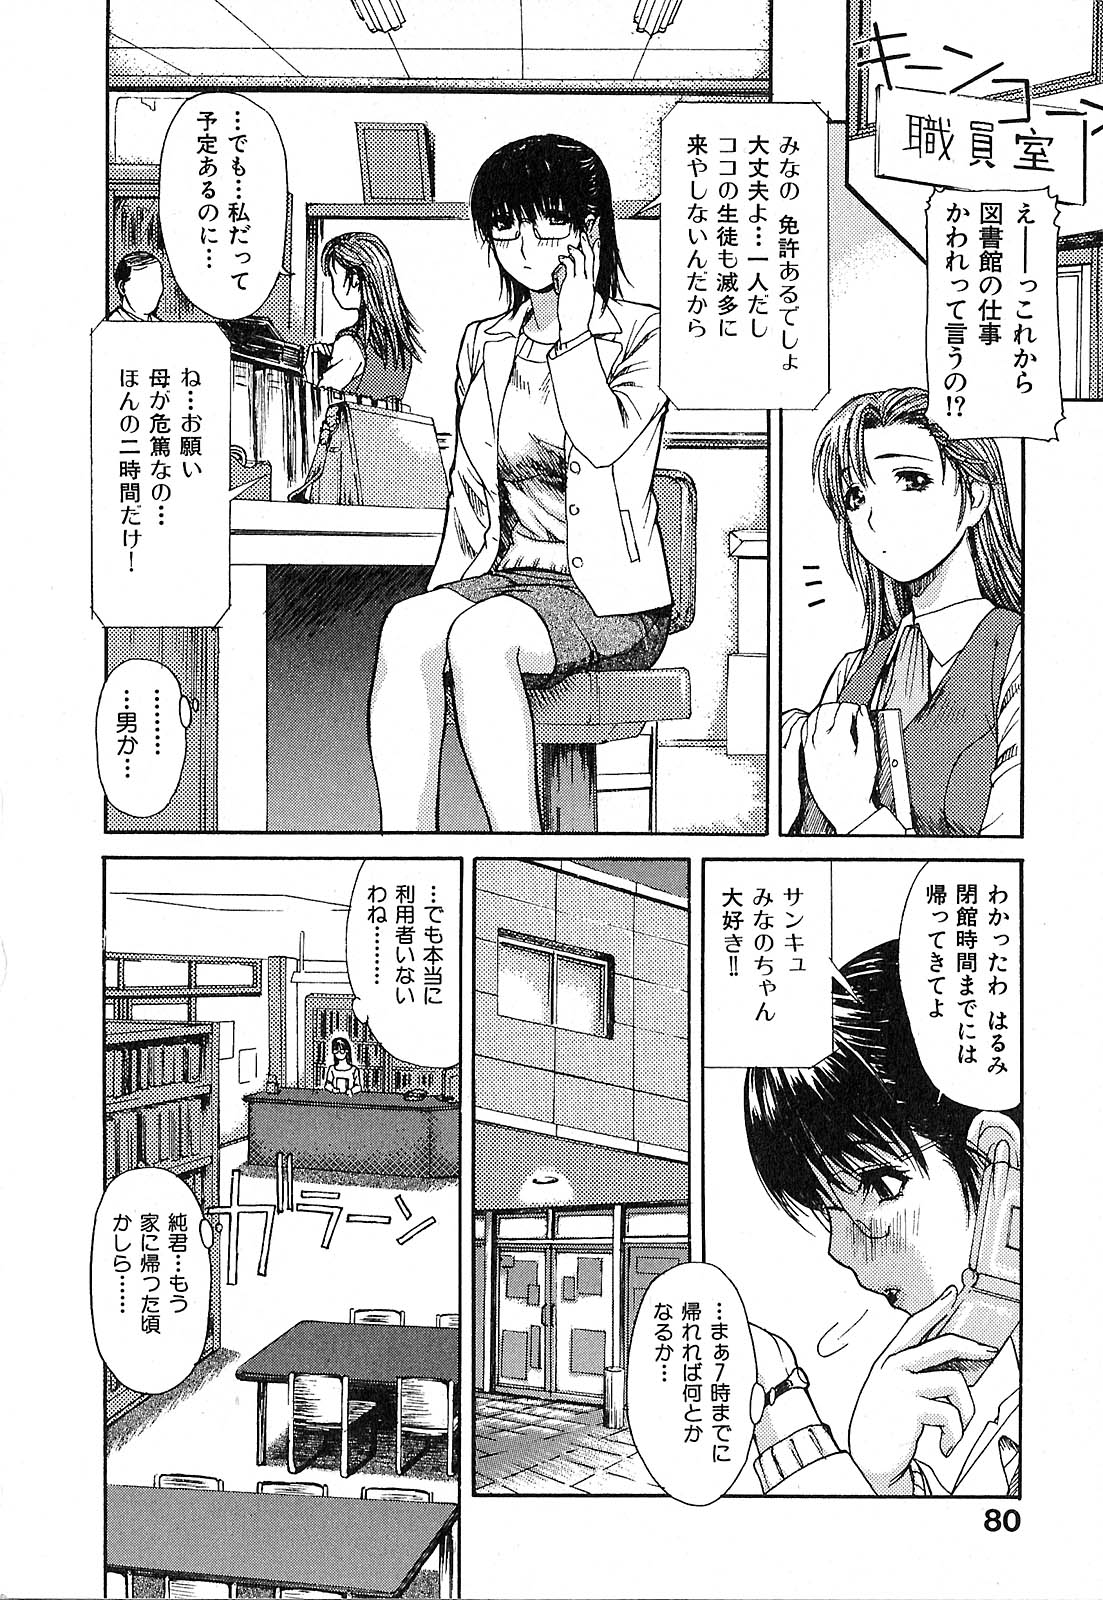 [Machinegun Joe] Tonari no Minano Sensei | My neighboring teacher MINANO [MGジョー] 隣のみなの先生